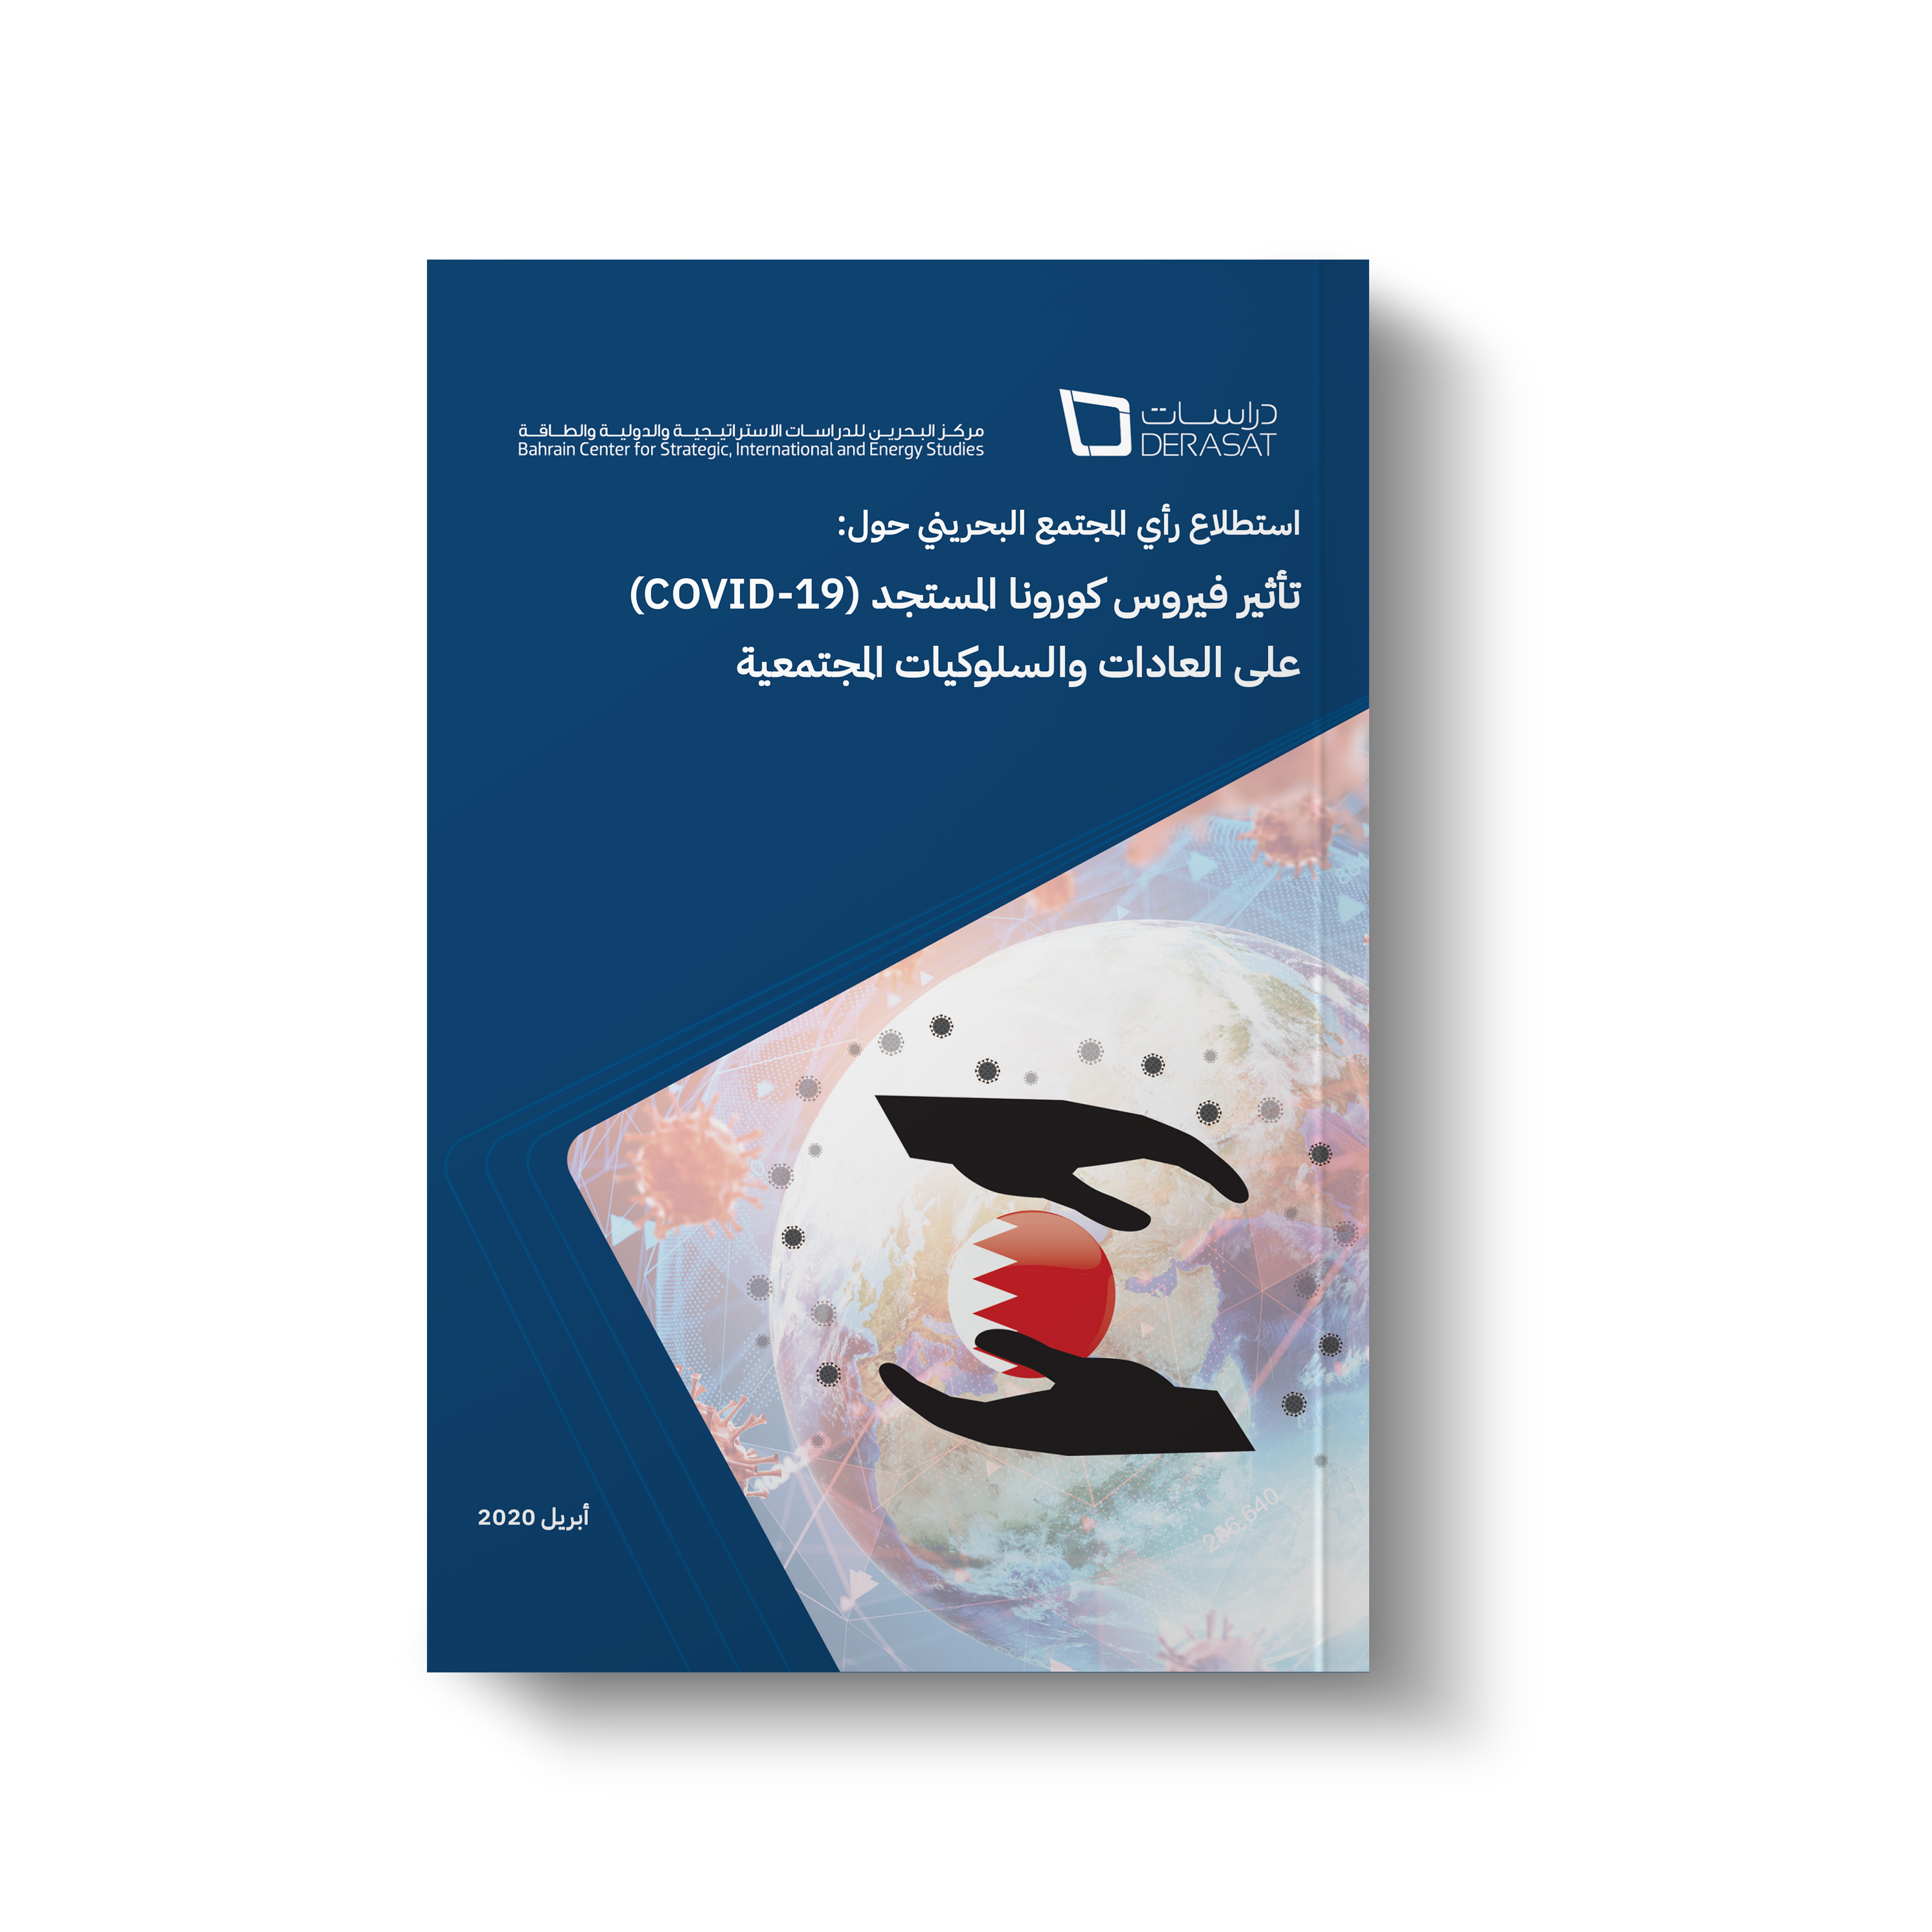 استطلاع رأي المجتمع البحريني حول: تأثير فيروس كورونا المستجد على العادات والسلوكيات المجتمعية